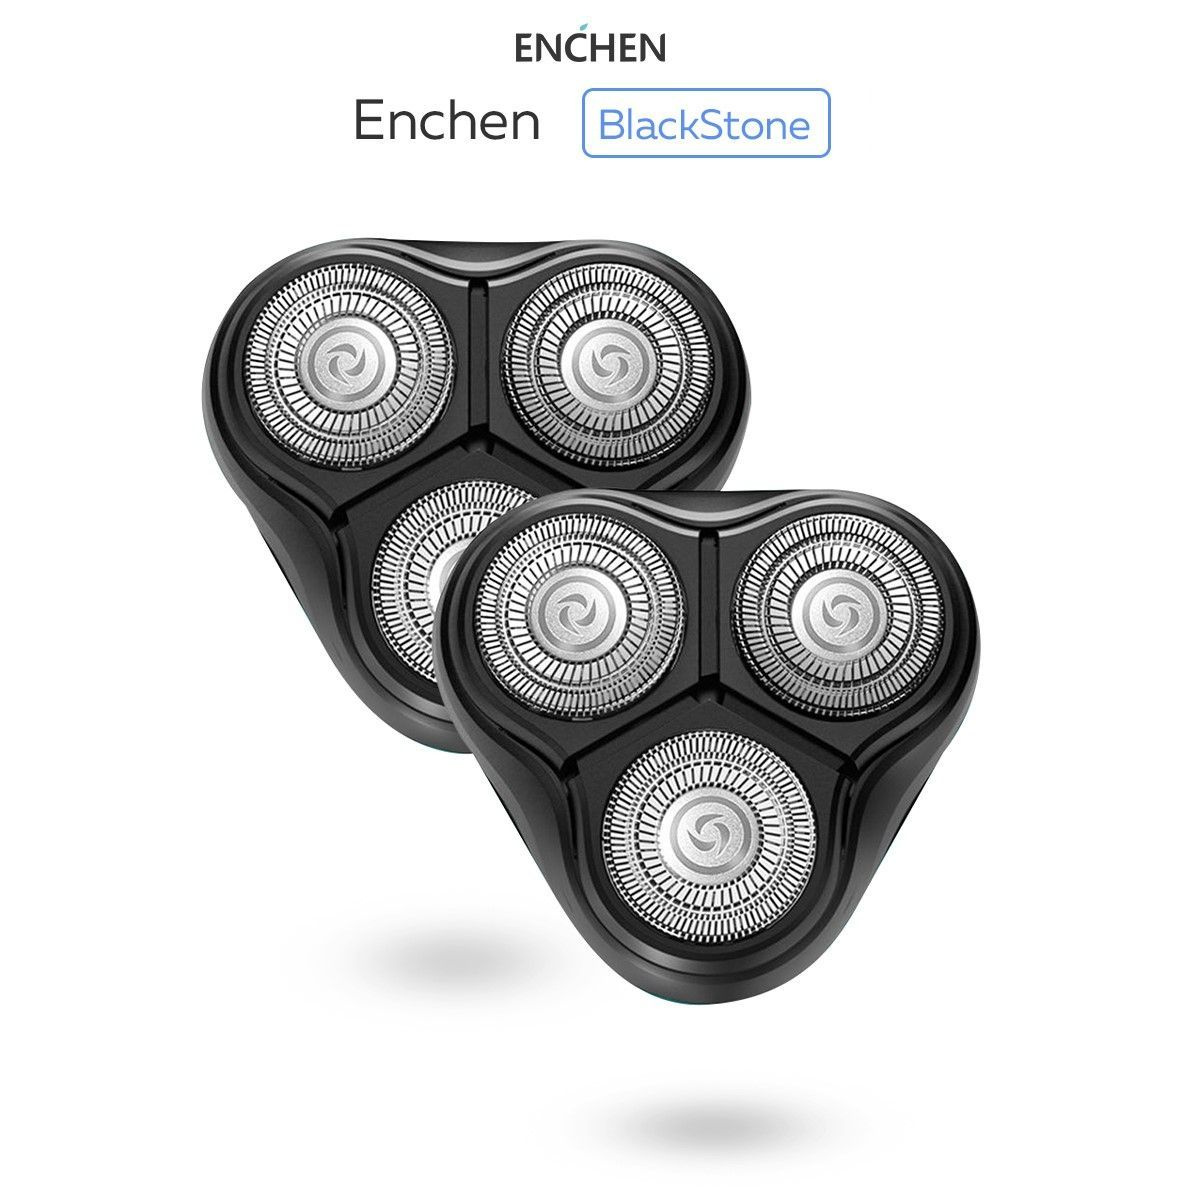 Сменные бритвенные головки для электробритвы Enchen BlackStone C и BlackStone. 2шт